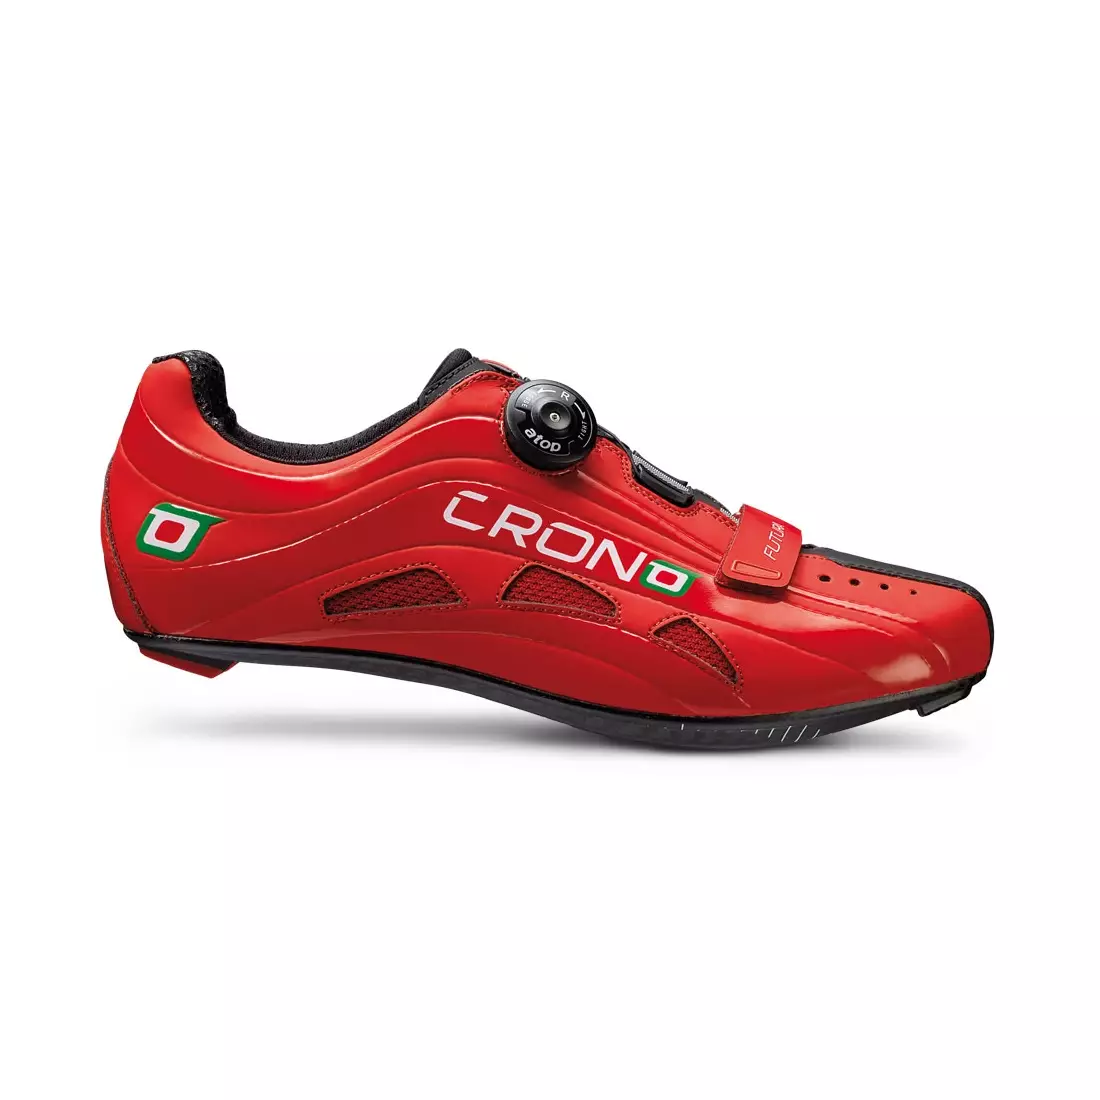 CRONO FUTURA NYLON - silniční cyklistické boty - barva: Červená